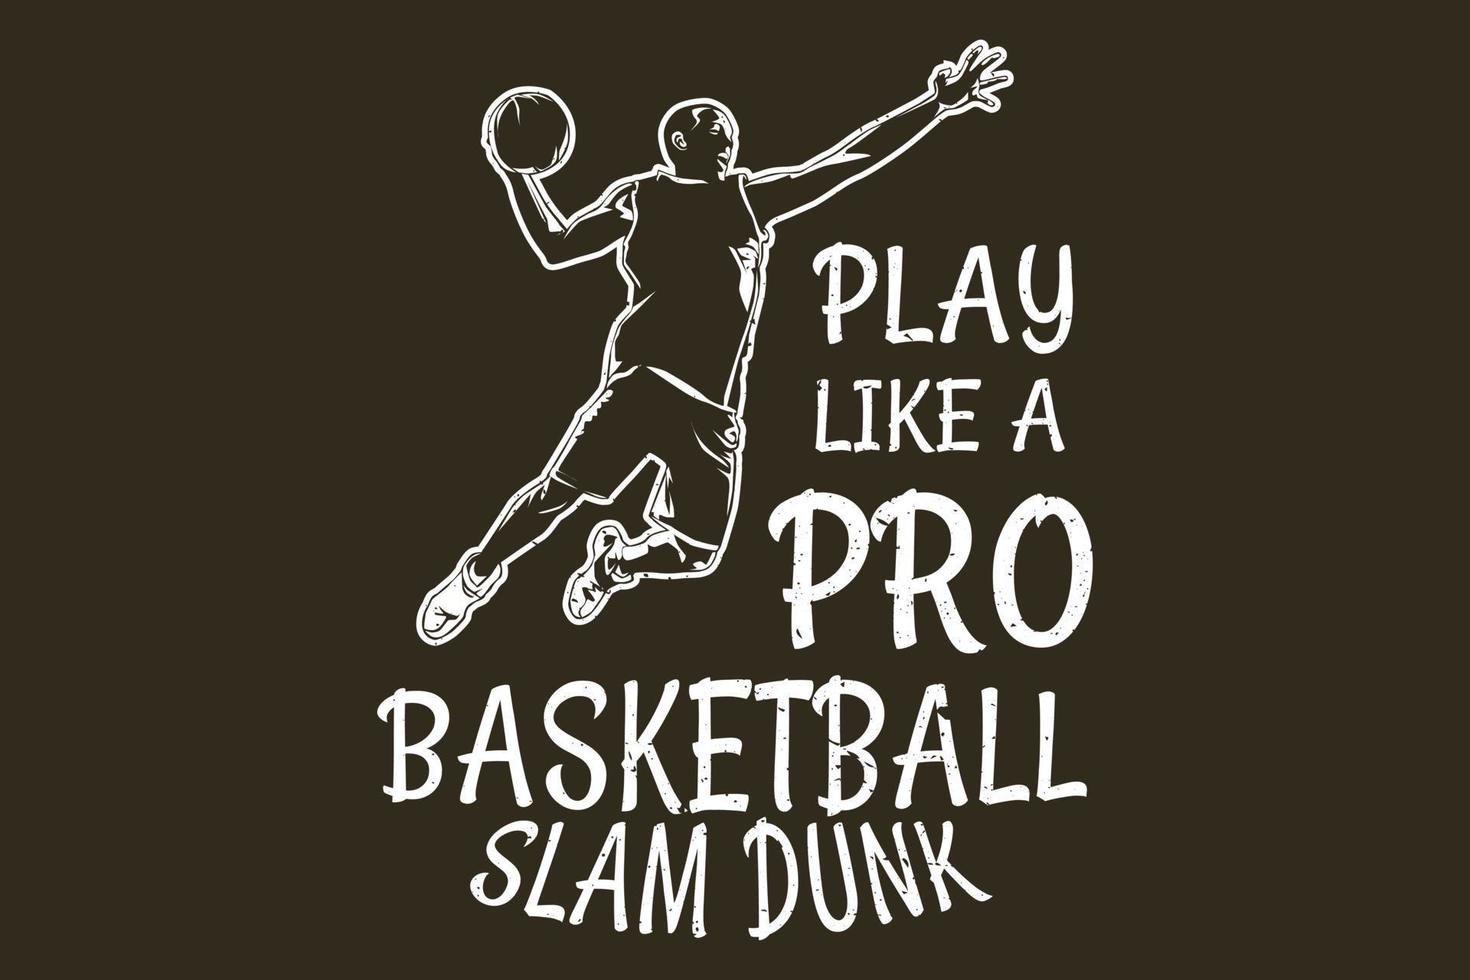 Basketball slam dunk silhouette design vector